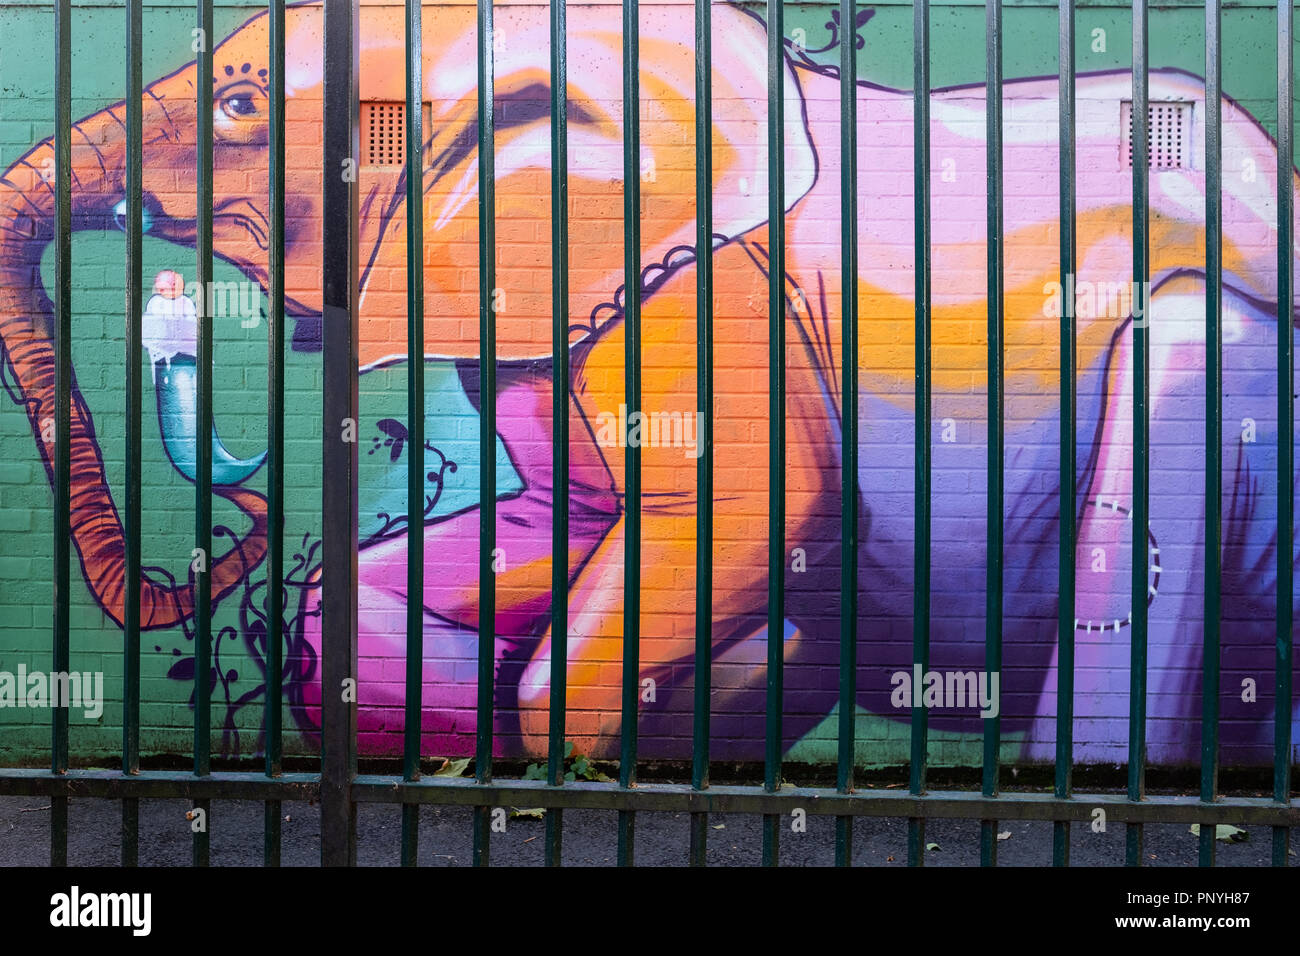 London graffiti de l'éléphant. Image prise pour montrer l'éléphant est derrière les barreaux. Banque D'Images